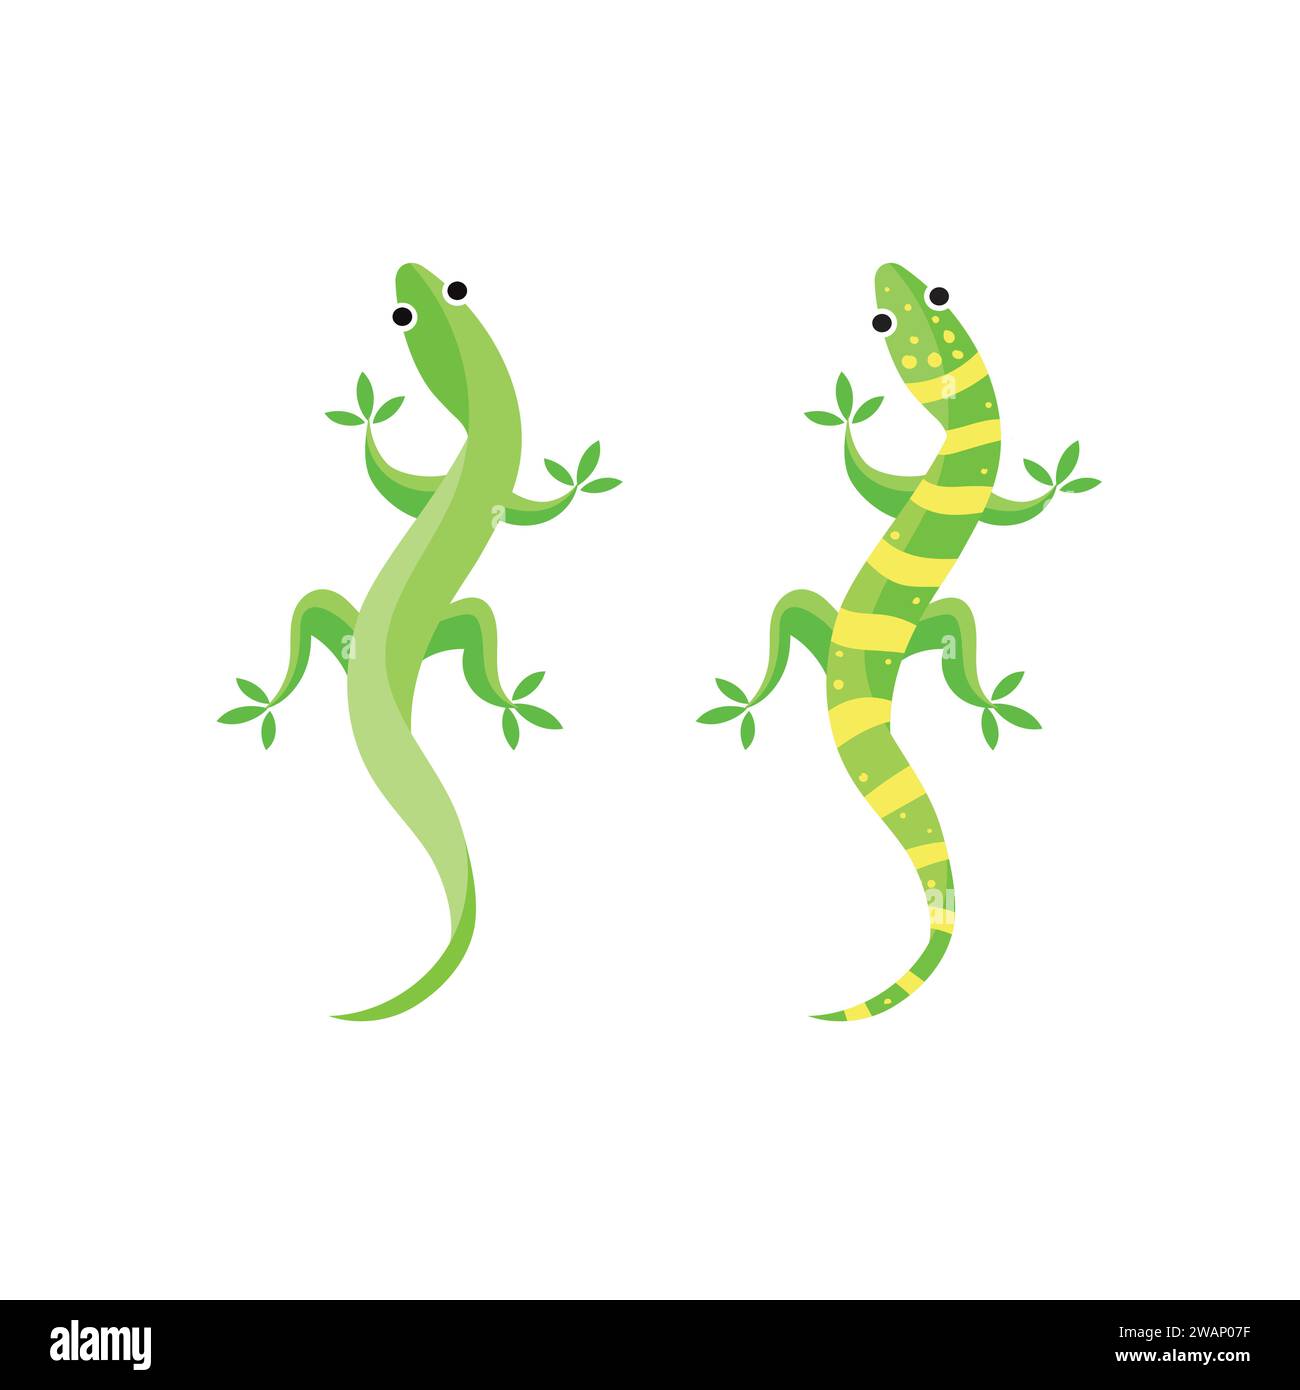 Gecko ou lézard illustration vectorielle, illustration d'animal isolé de lézard sur fond blanc. illustration de lézard. Illustration de Vecteur